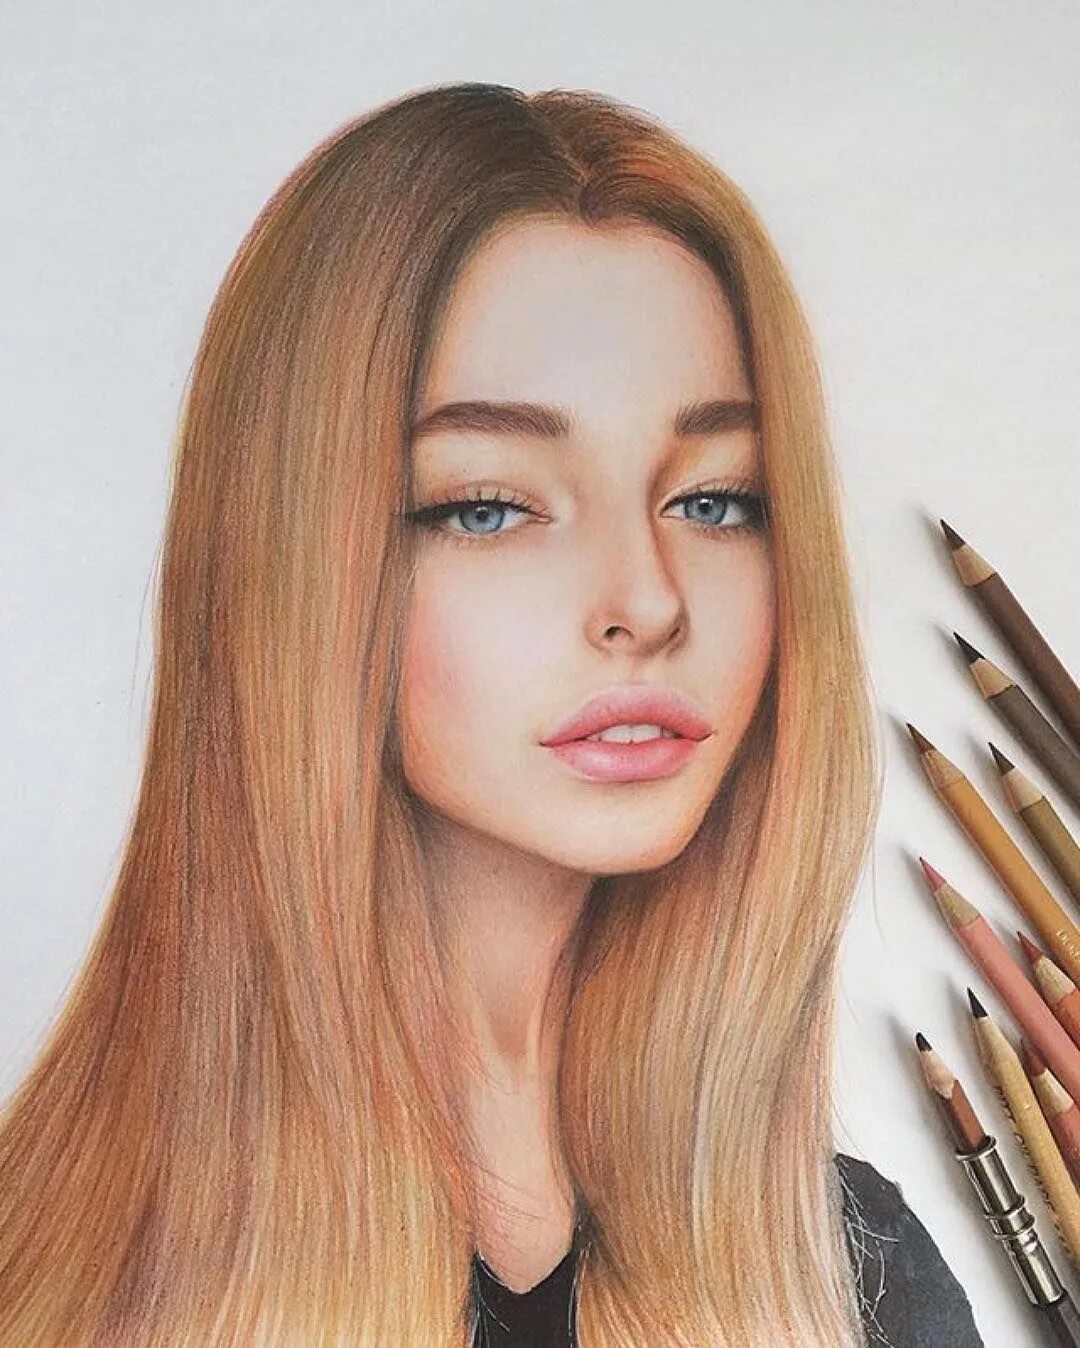 Девушка цветными карандашами. Лицо цветными карандашами. Портрет девушки. Портрет цветными карандашами.